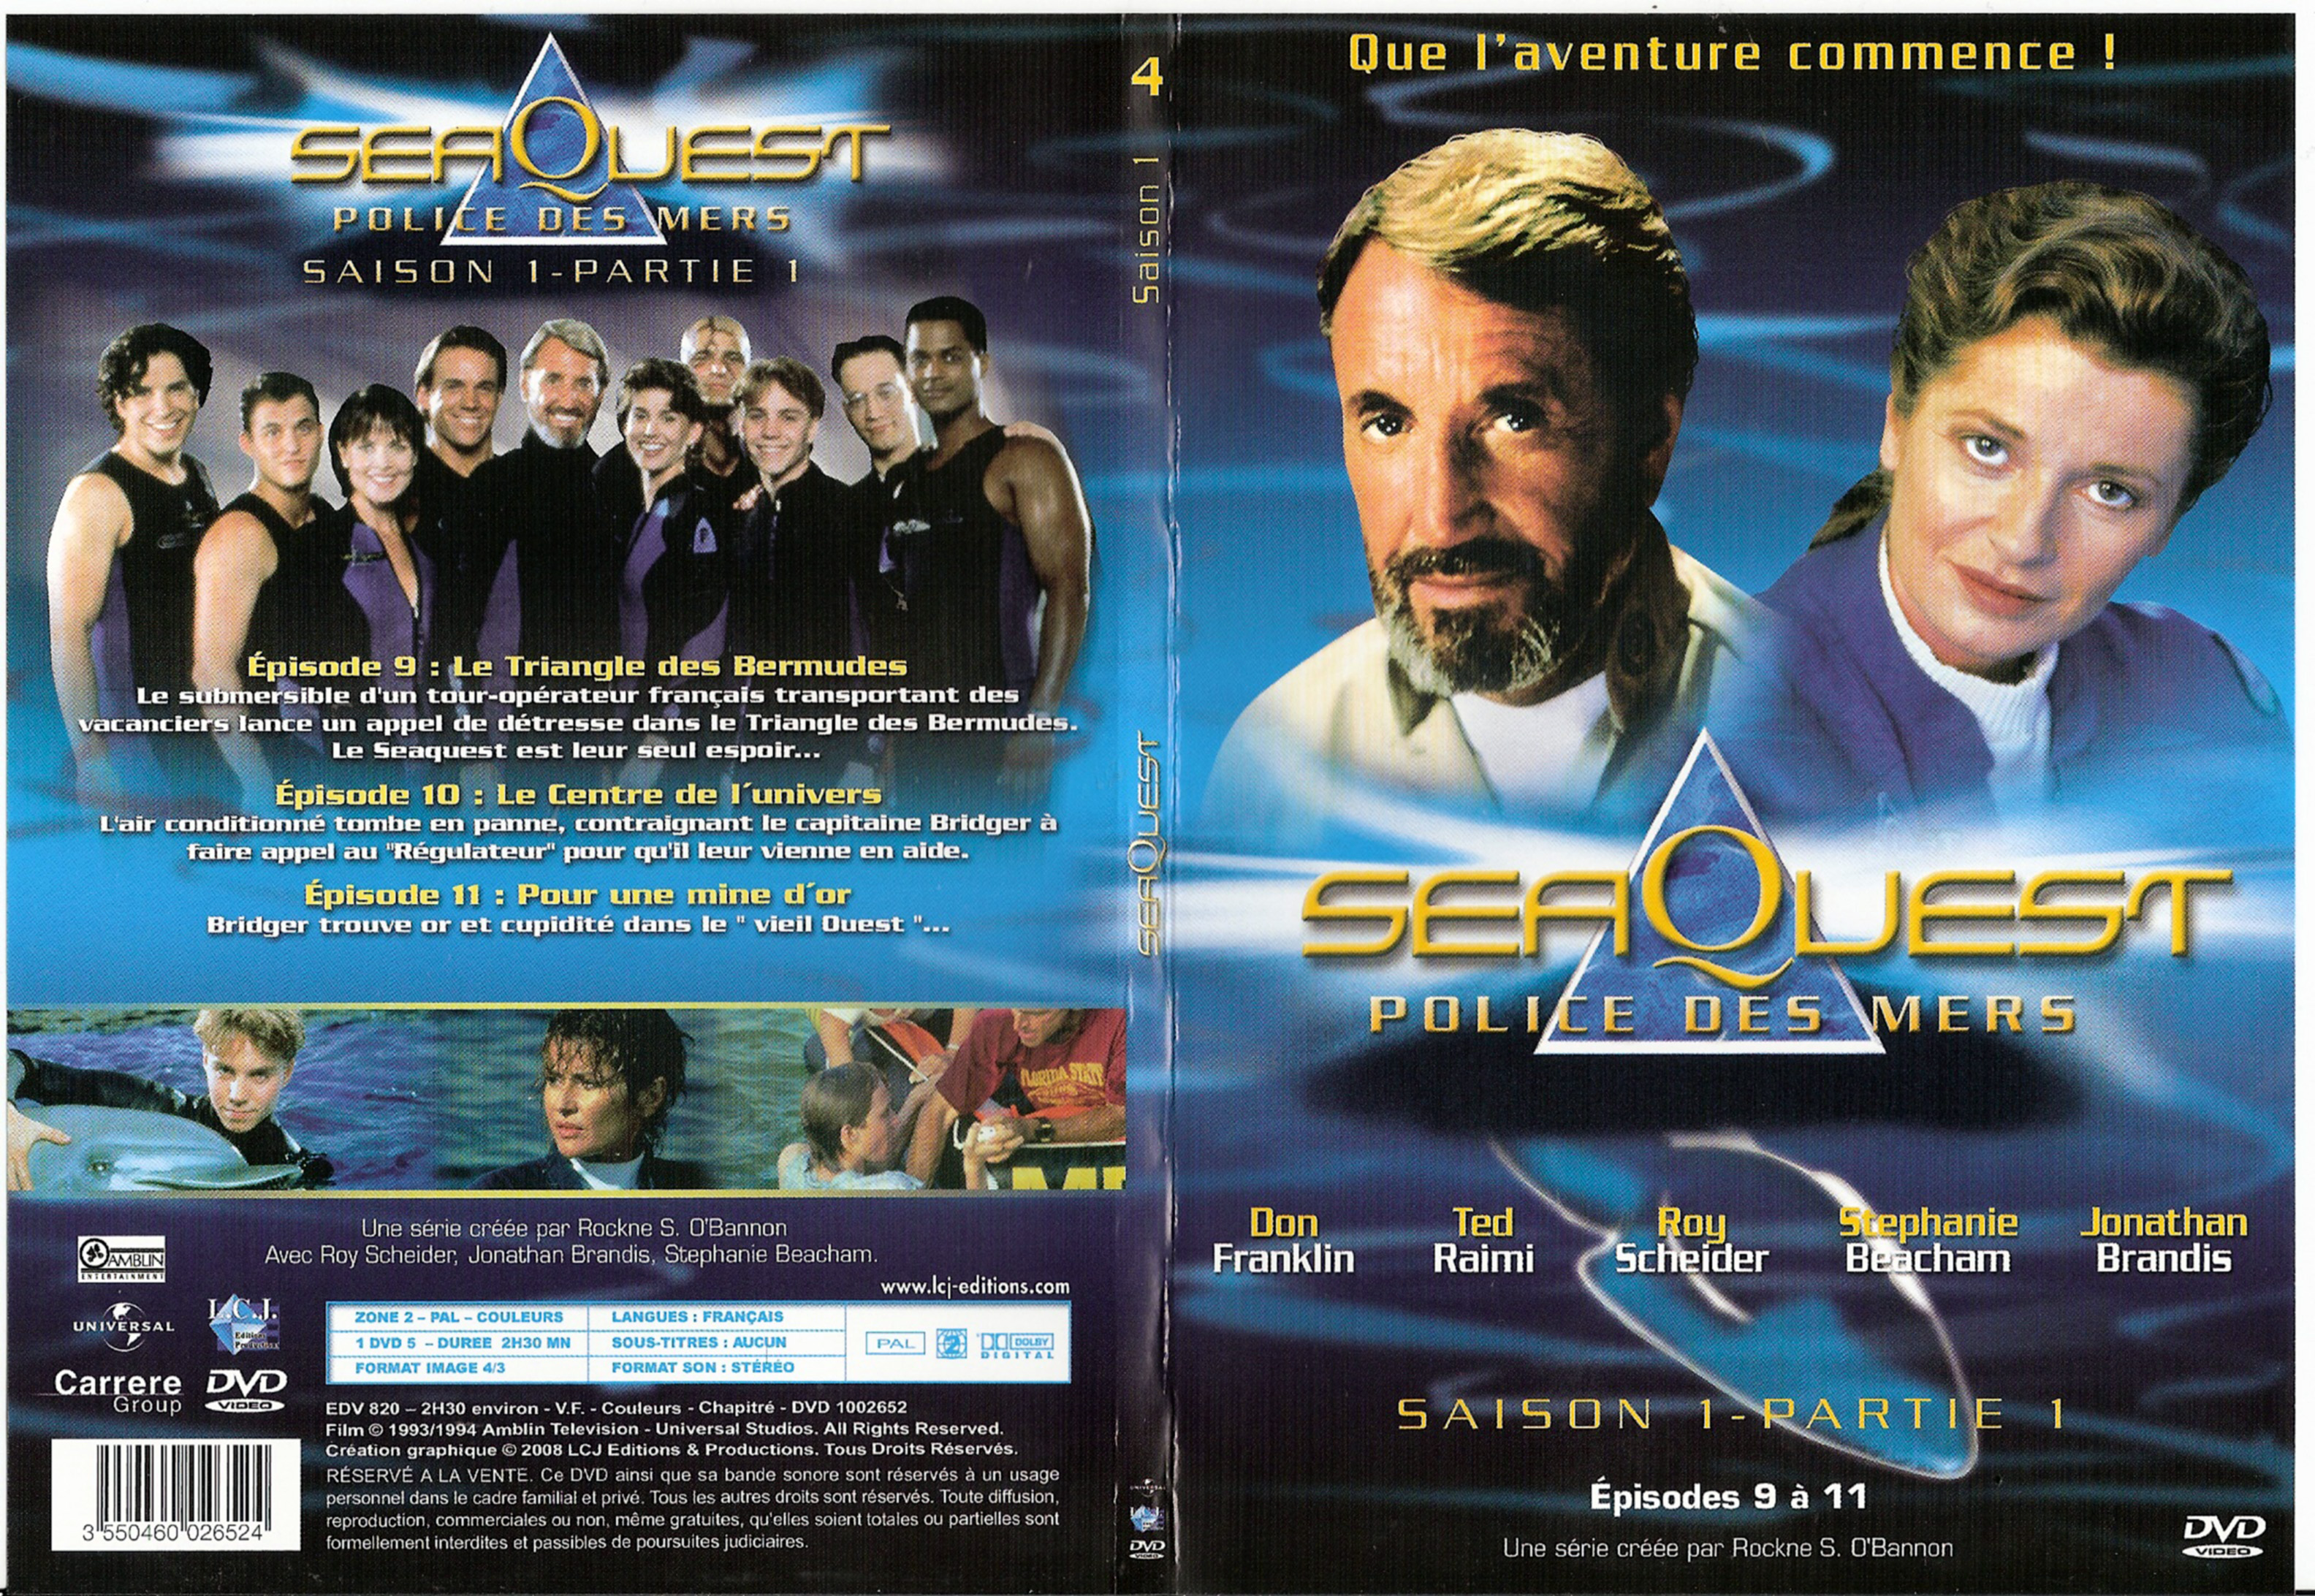 Jaquette DVD Seaquest Saison 1 Partie 1 vol 4